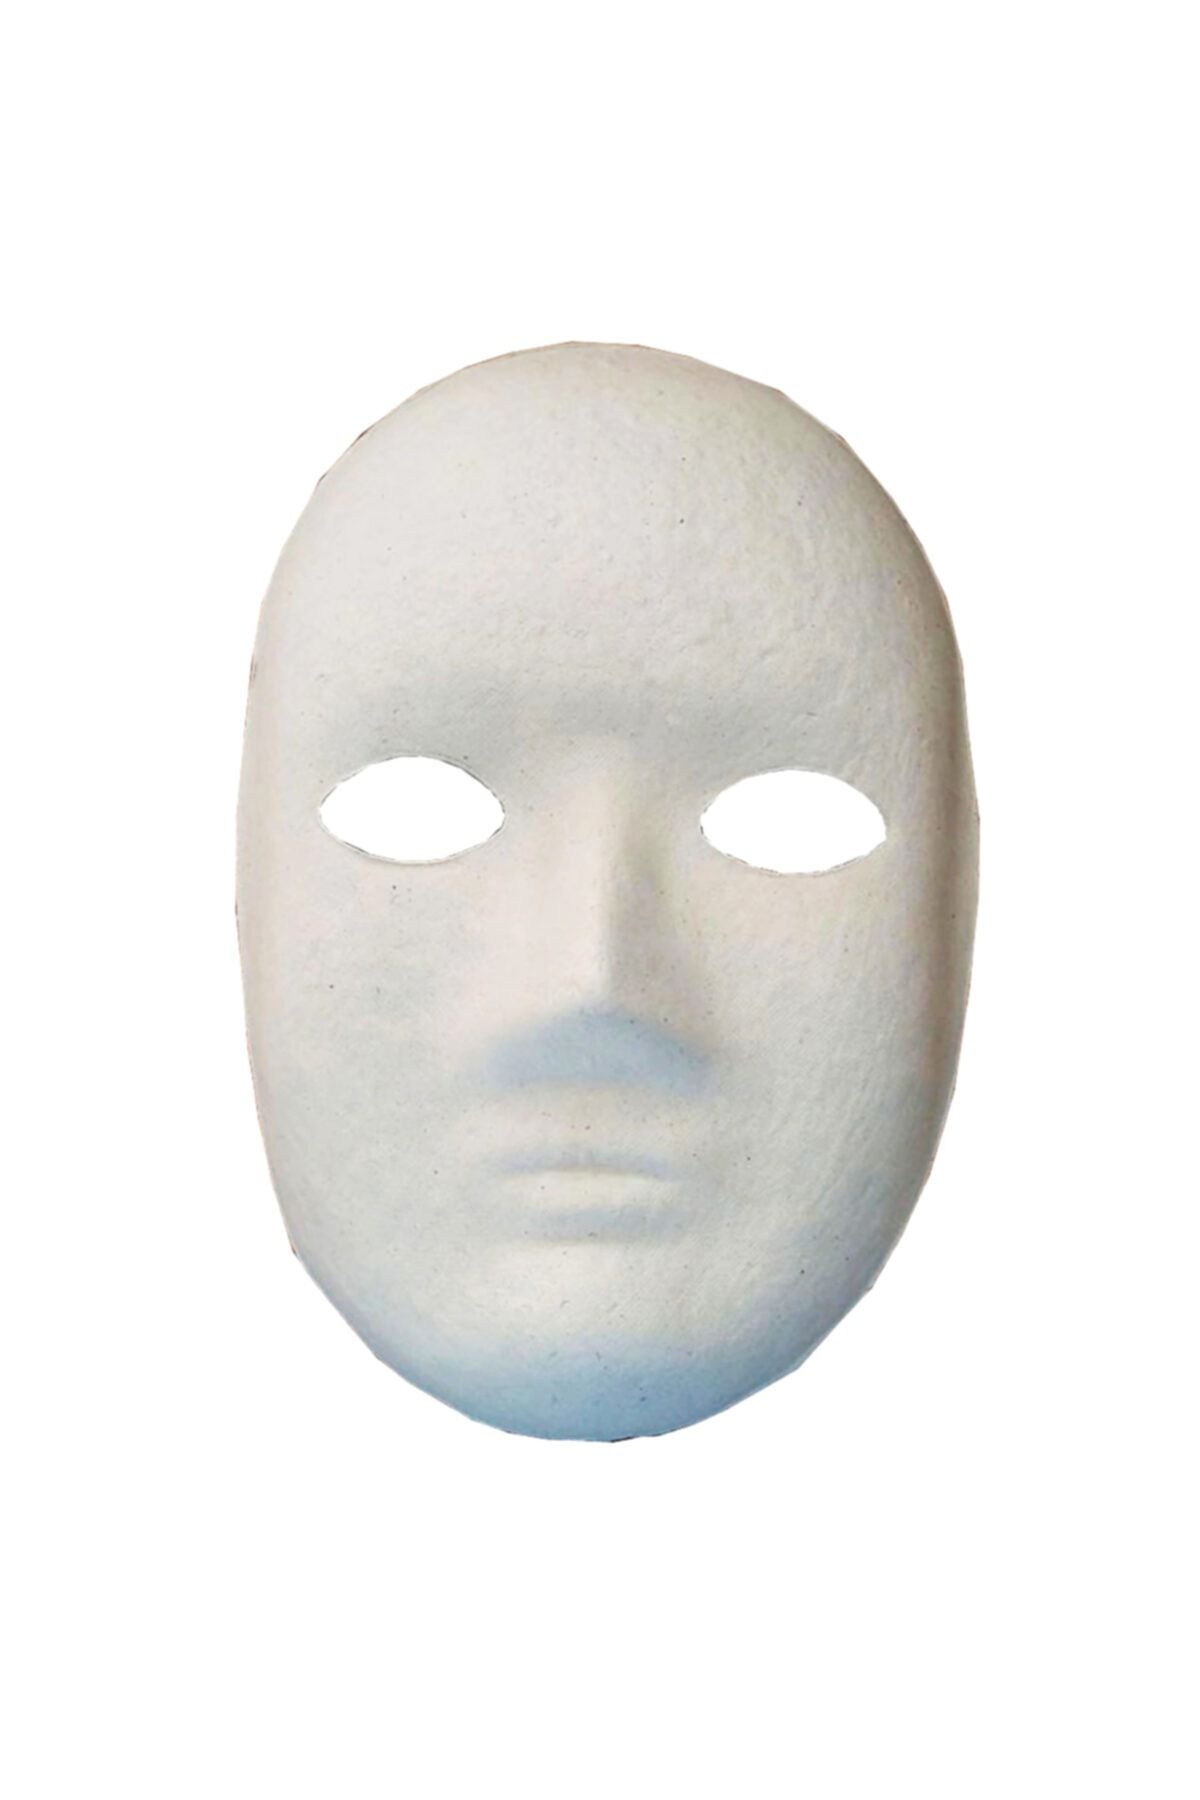 Limmy Boyanabilir Boyama Maskesi ( Erkek ) Kağıt Karton Maske - 5 Adet